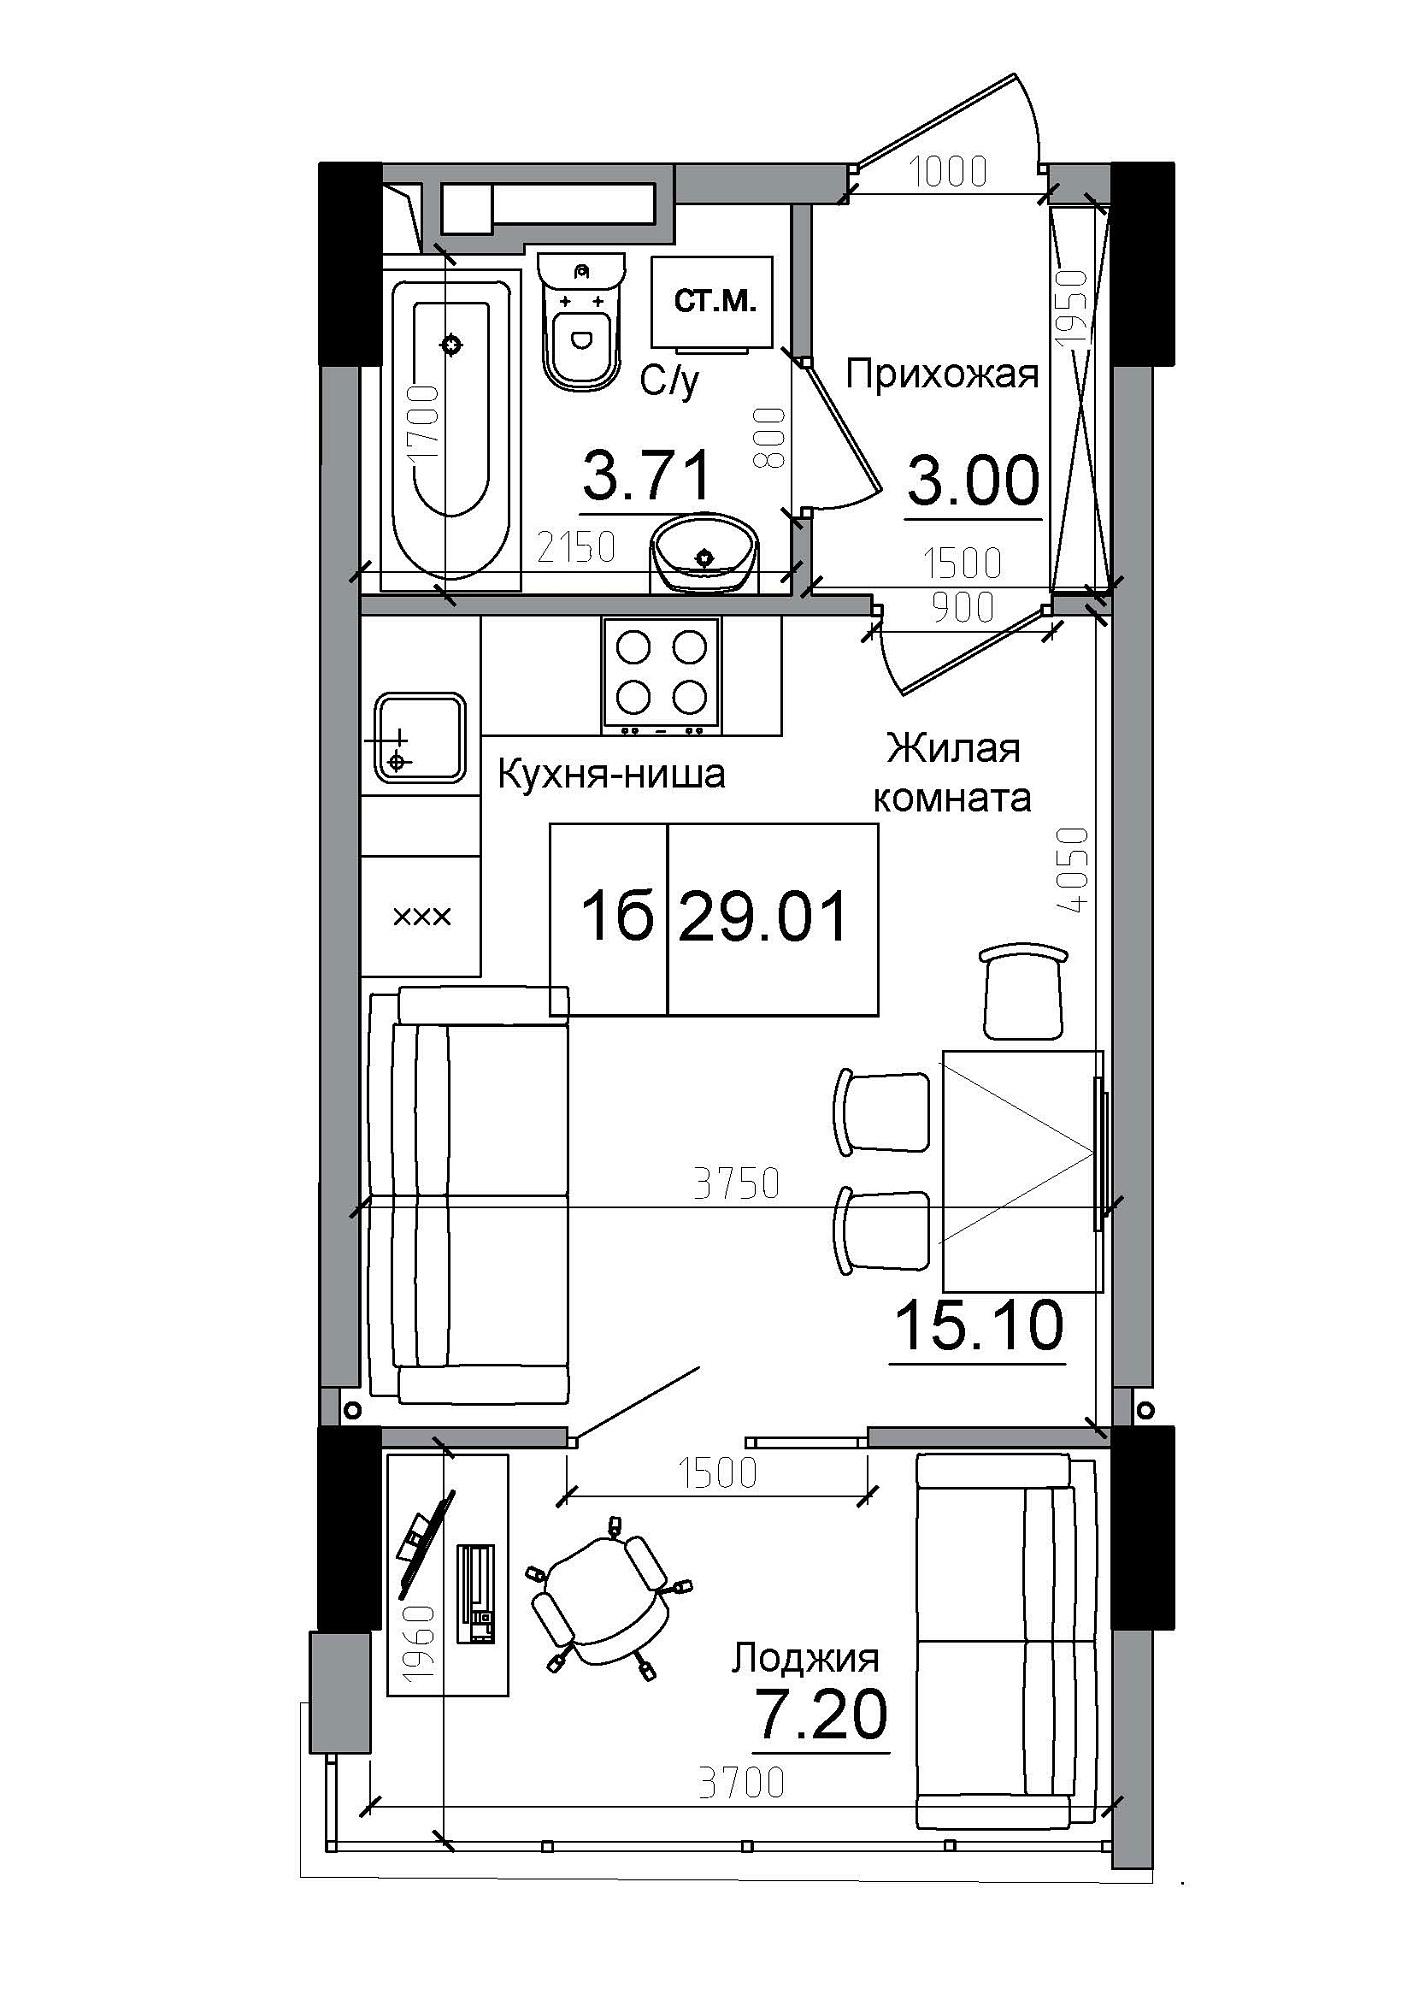 Планування Smart-квартира площею 29.01м2, AB-12-01/00002.